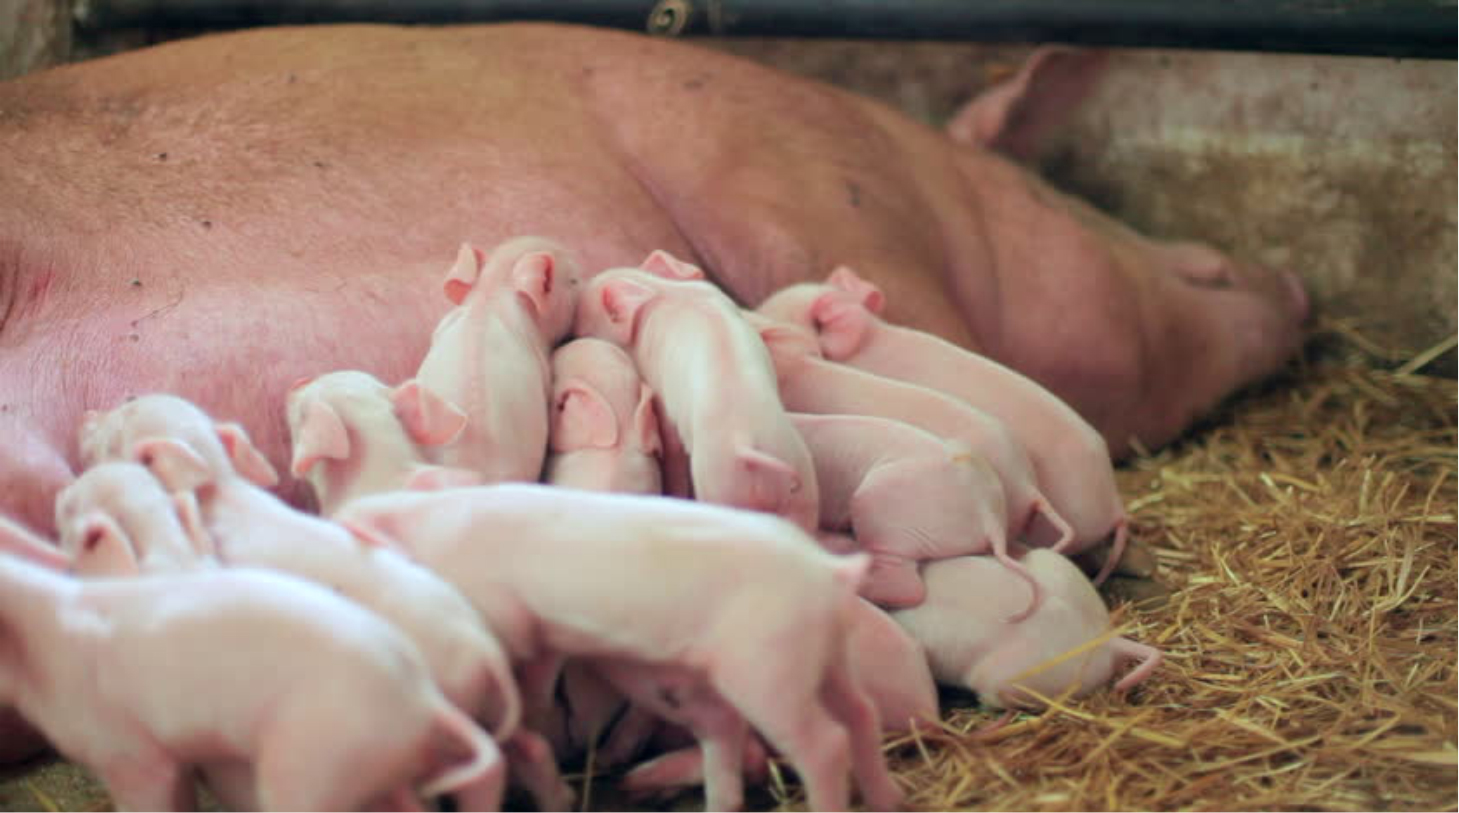 Функциональные нарушения работы желудочно-кишечного тракта у групп подсоса и отъема свиней